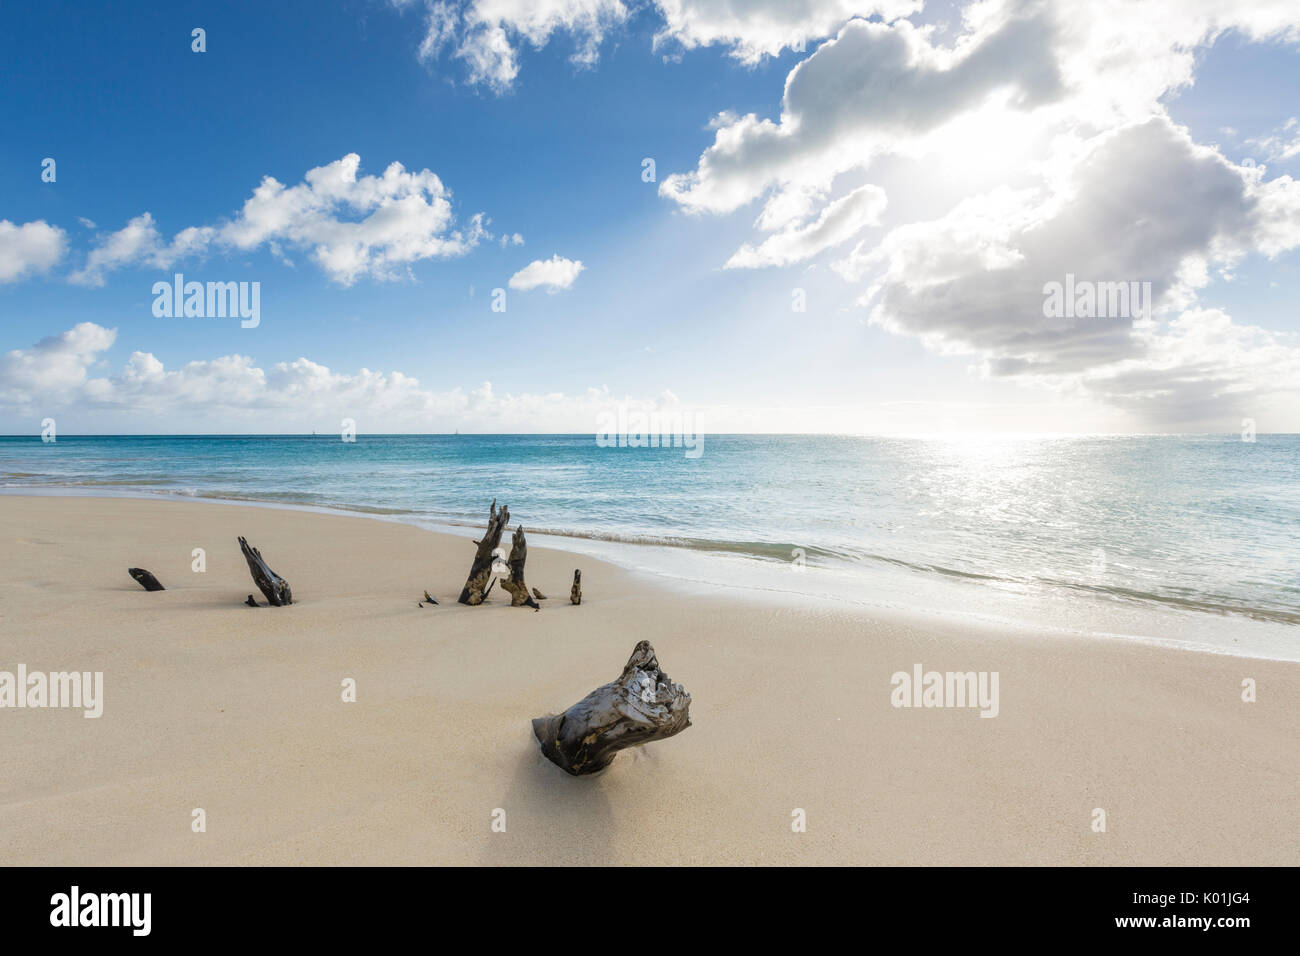 Les troncs des arbres sur la plage encadrée par la mer des Caraïbes cristalline Ffryers Beach Antigua-et-Barbuda Antilles Îles sous le vent Banque D'Images